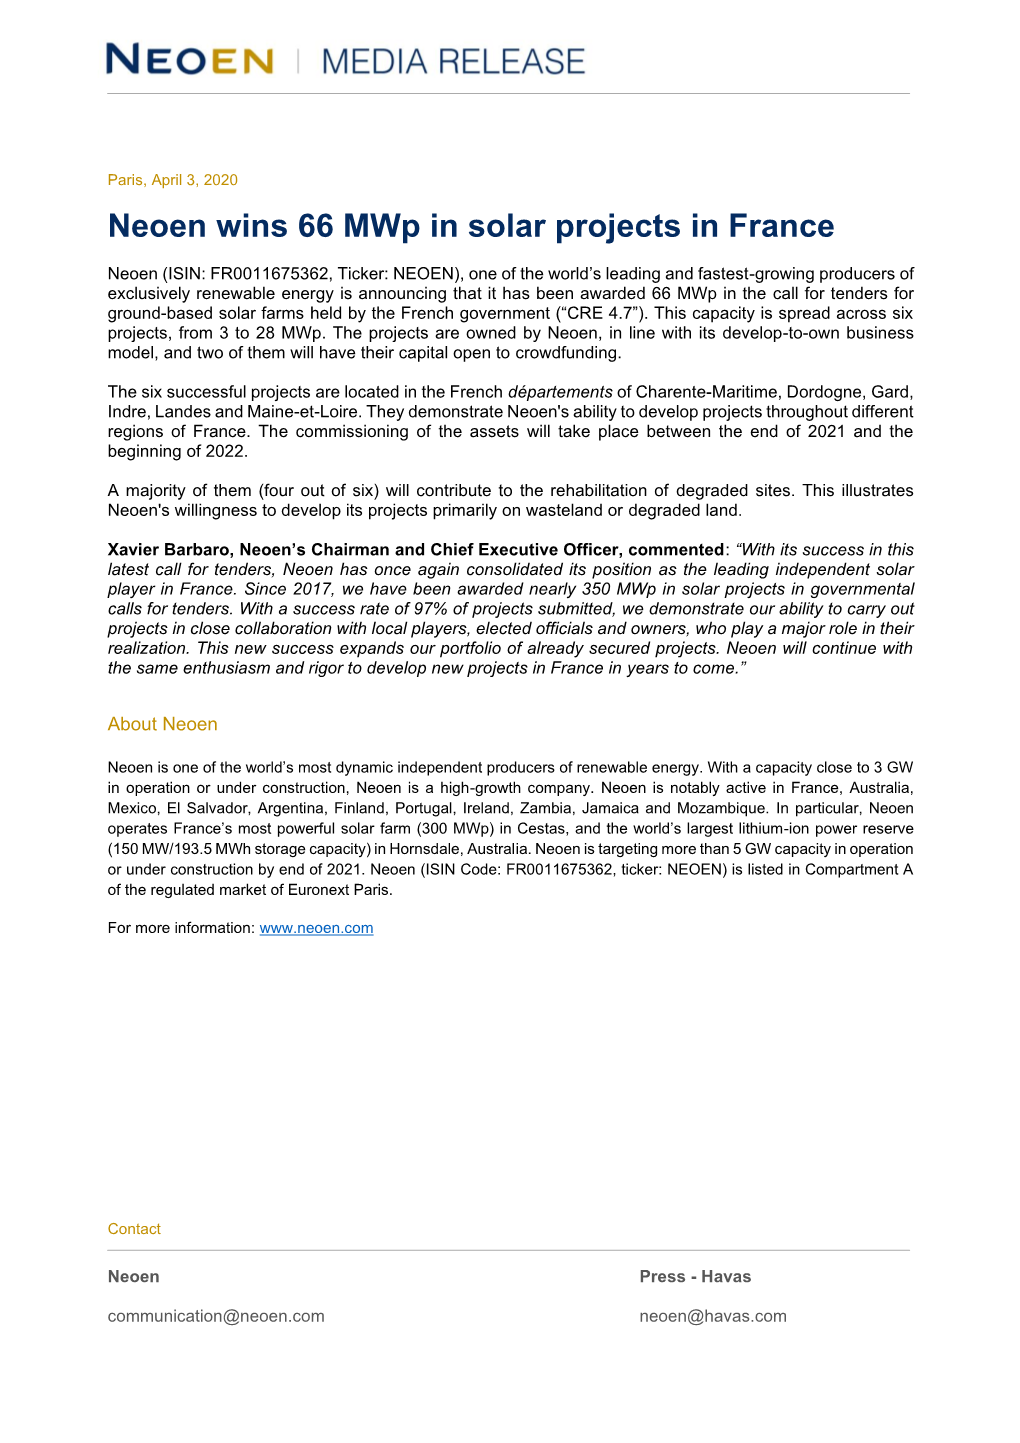 Neoen Wins 66 Mwp in Solar Projects in France